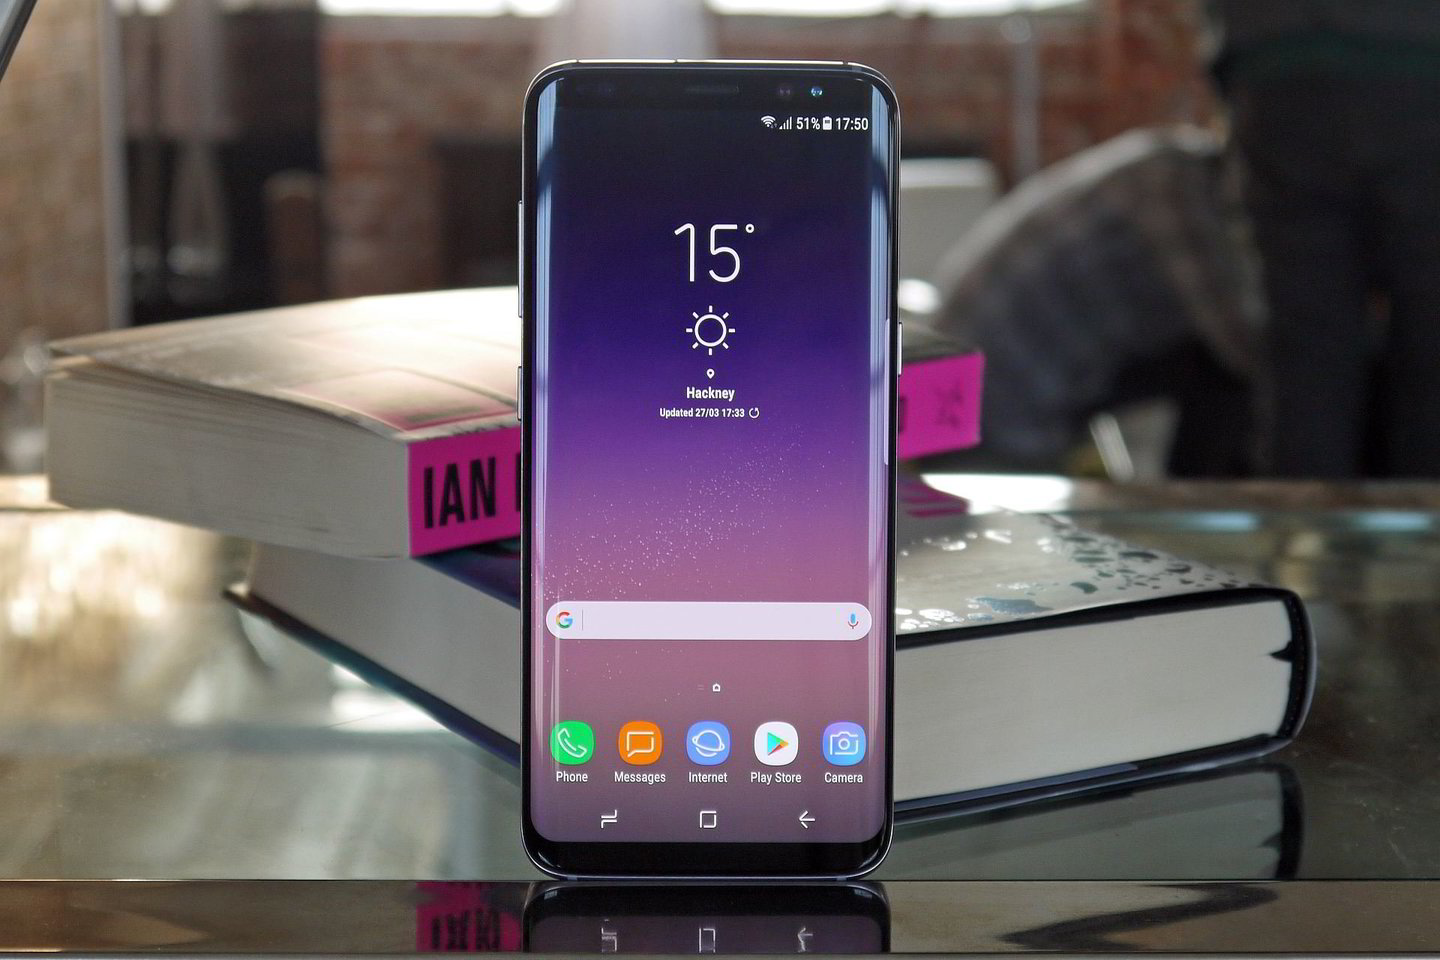  Naujos kartos „Samsung“ telefonų modelių pavadinimai oficialiai dar nėra patvirtinti, bet neoficialūs šaltiniai skelbia, kad naujoji telefonų karta pratęs ankstesnę numeraciją ir vadinsis tiesiog „Galaxy S9“ ir „Galaxy S9+“.<br> Techradar.com iliustr.